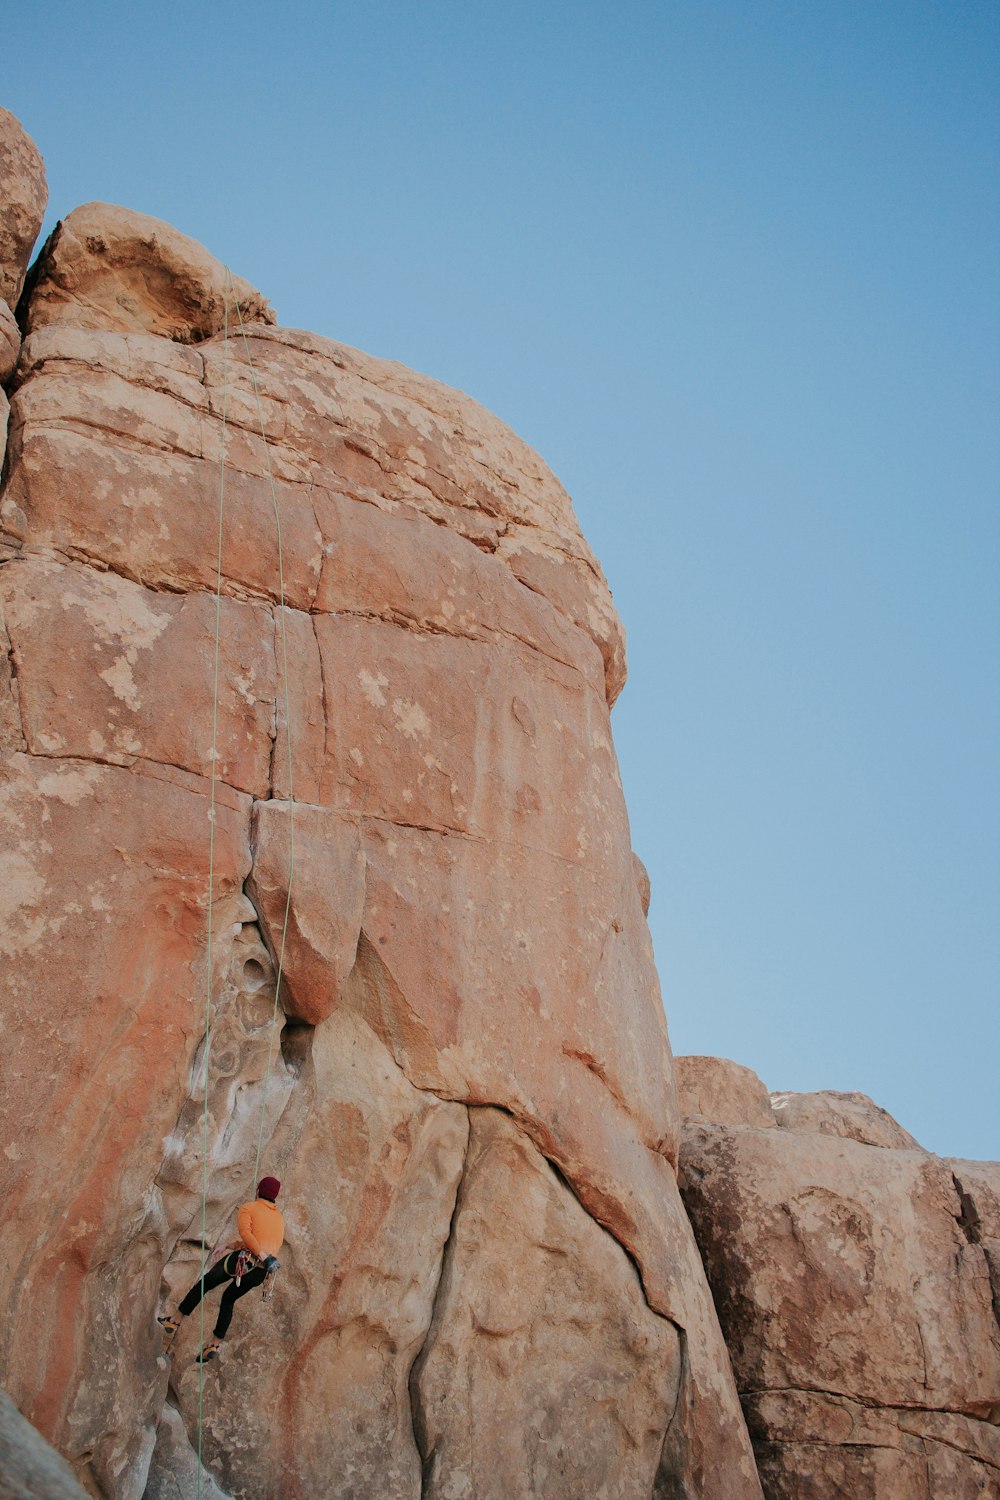 Mujer escalando en roca